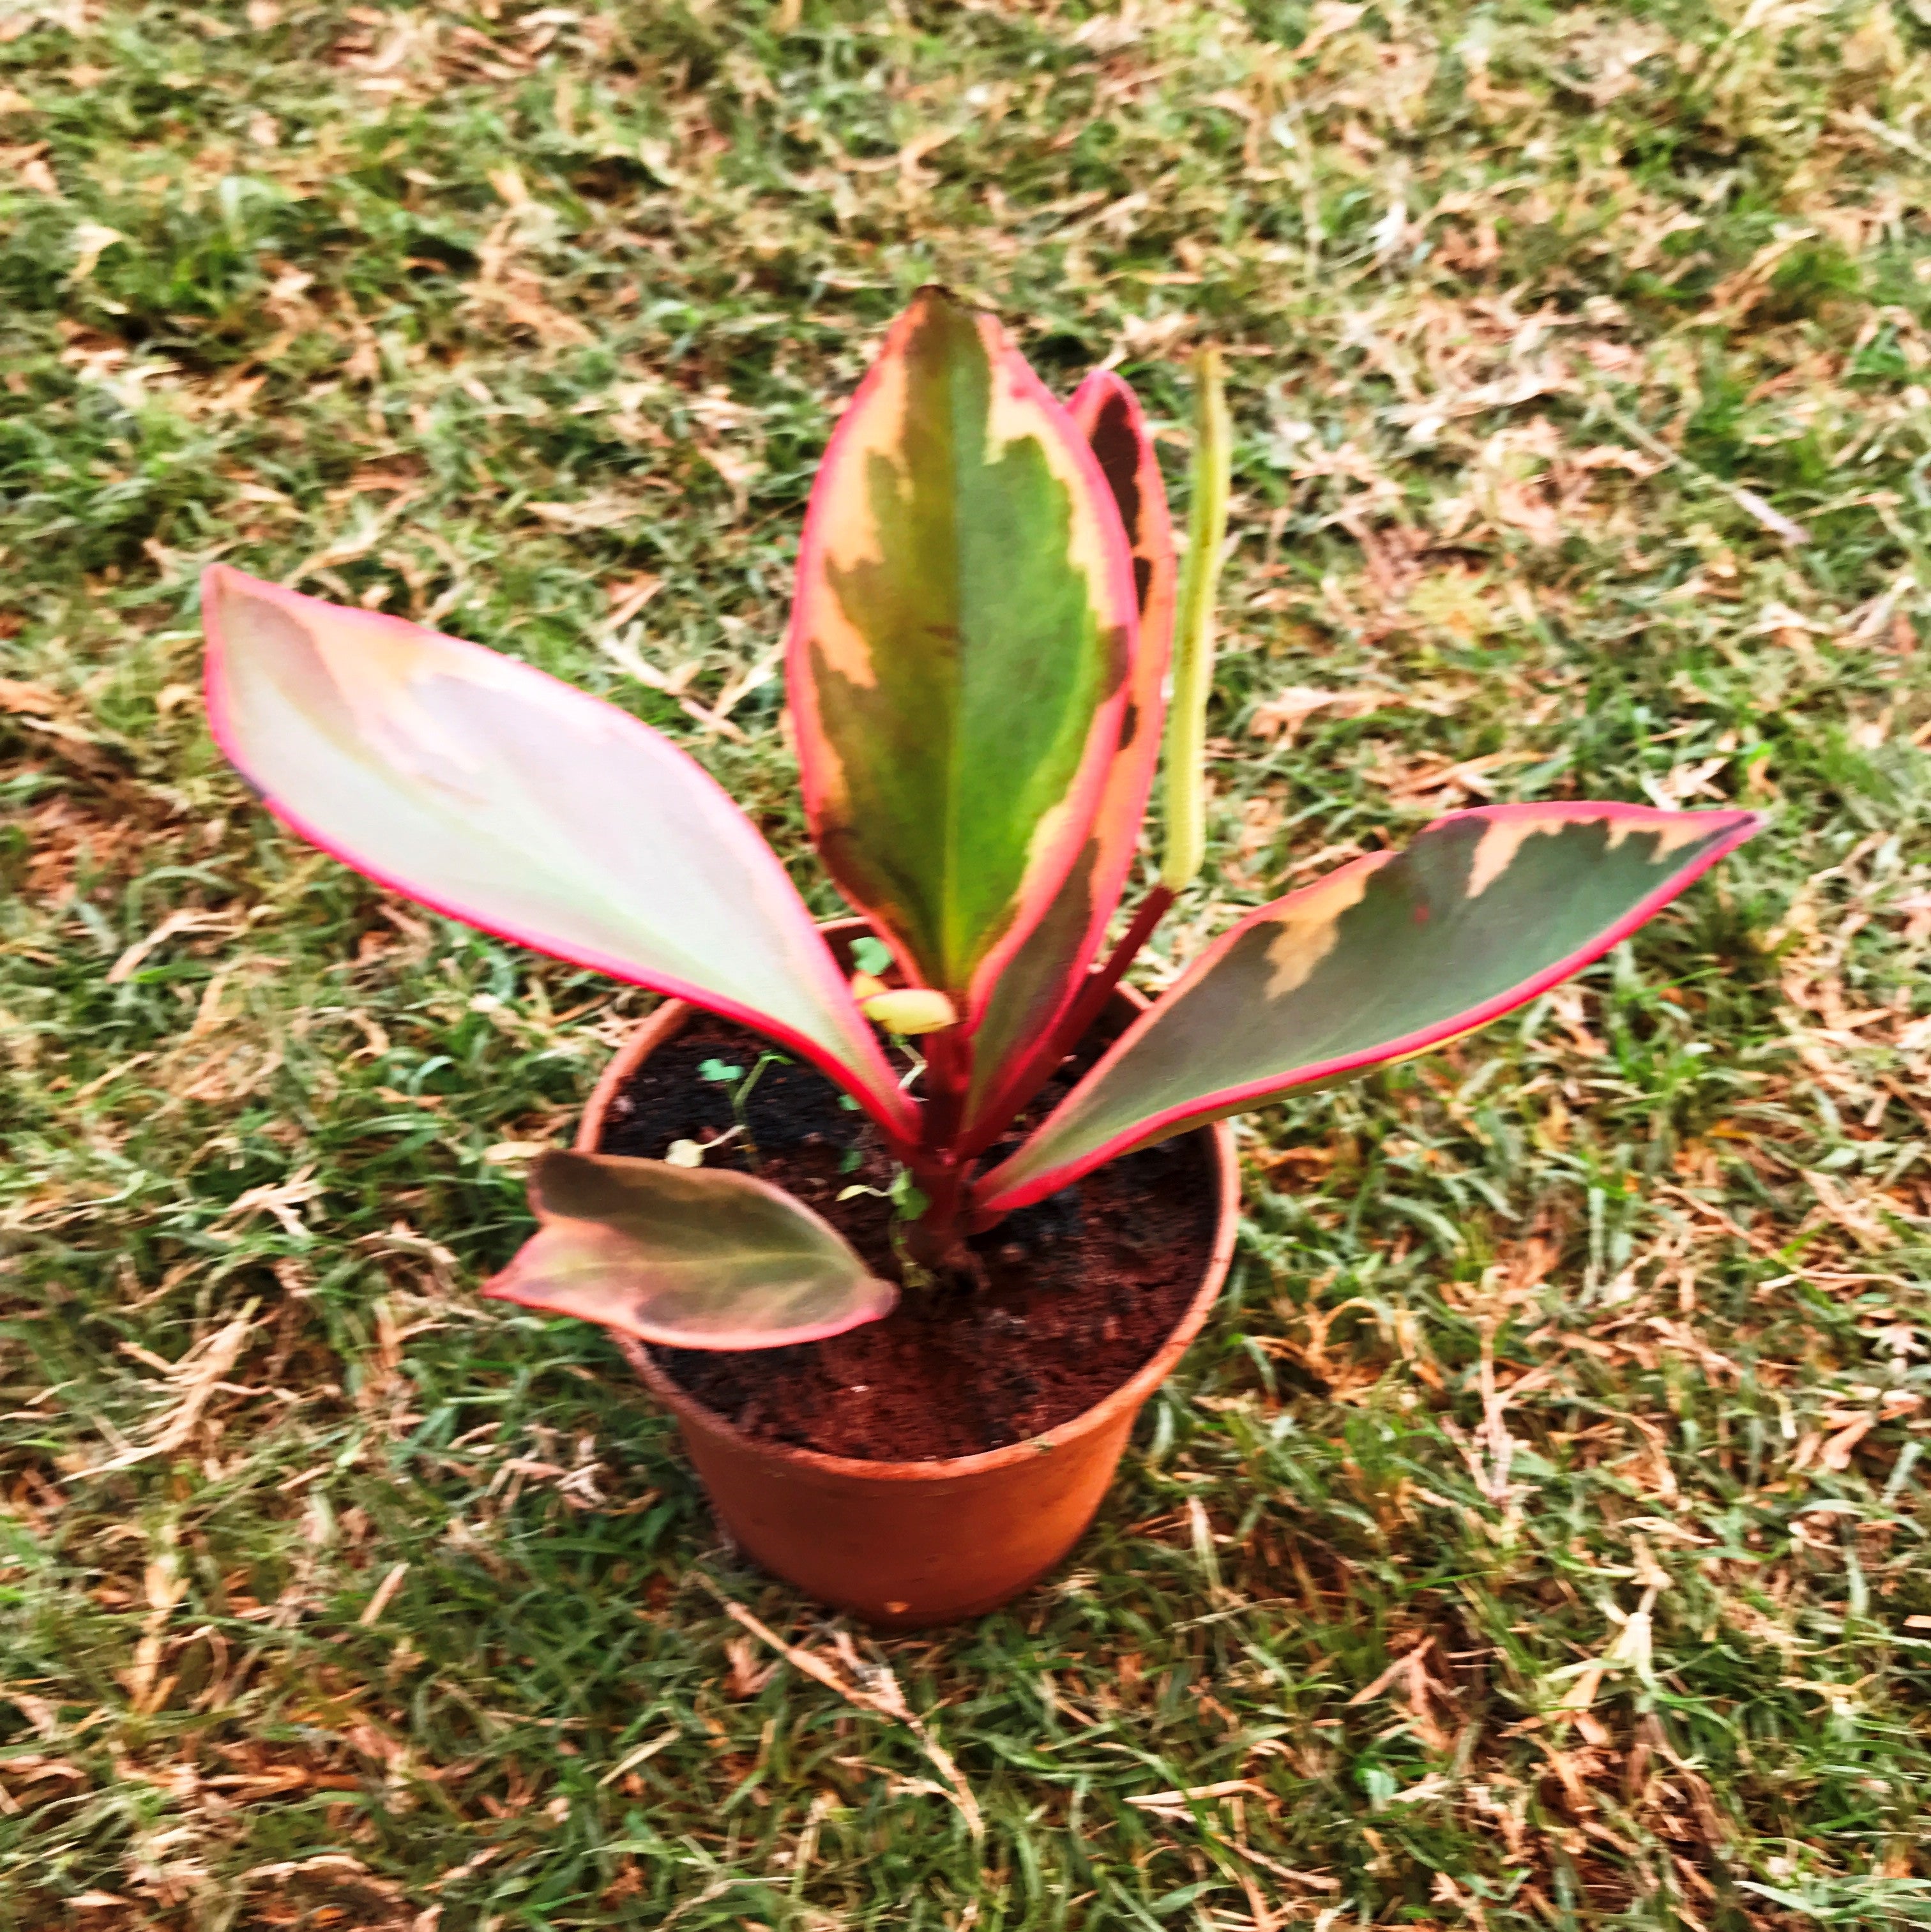  PlantVine Peperomia Cupid, Peperomia scandens 'Variegata' -  Cesta colgante grande, planta de piso, planta viva : Patio, Césped y Jardín